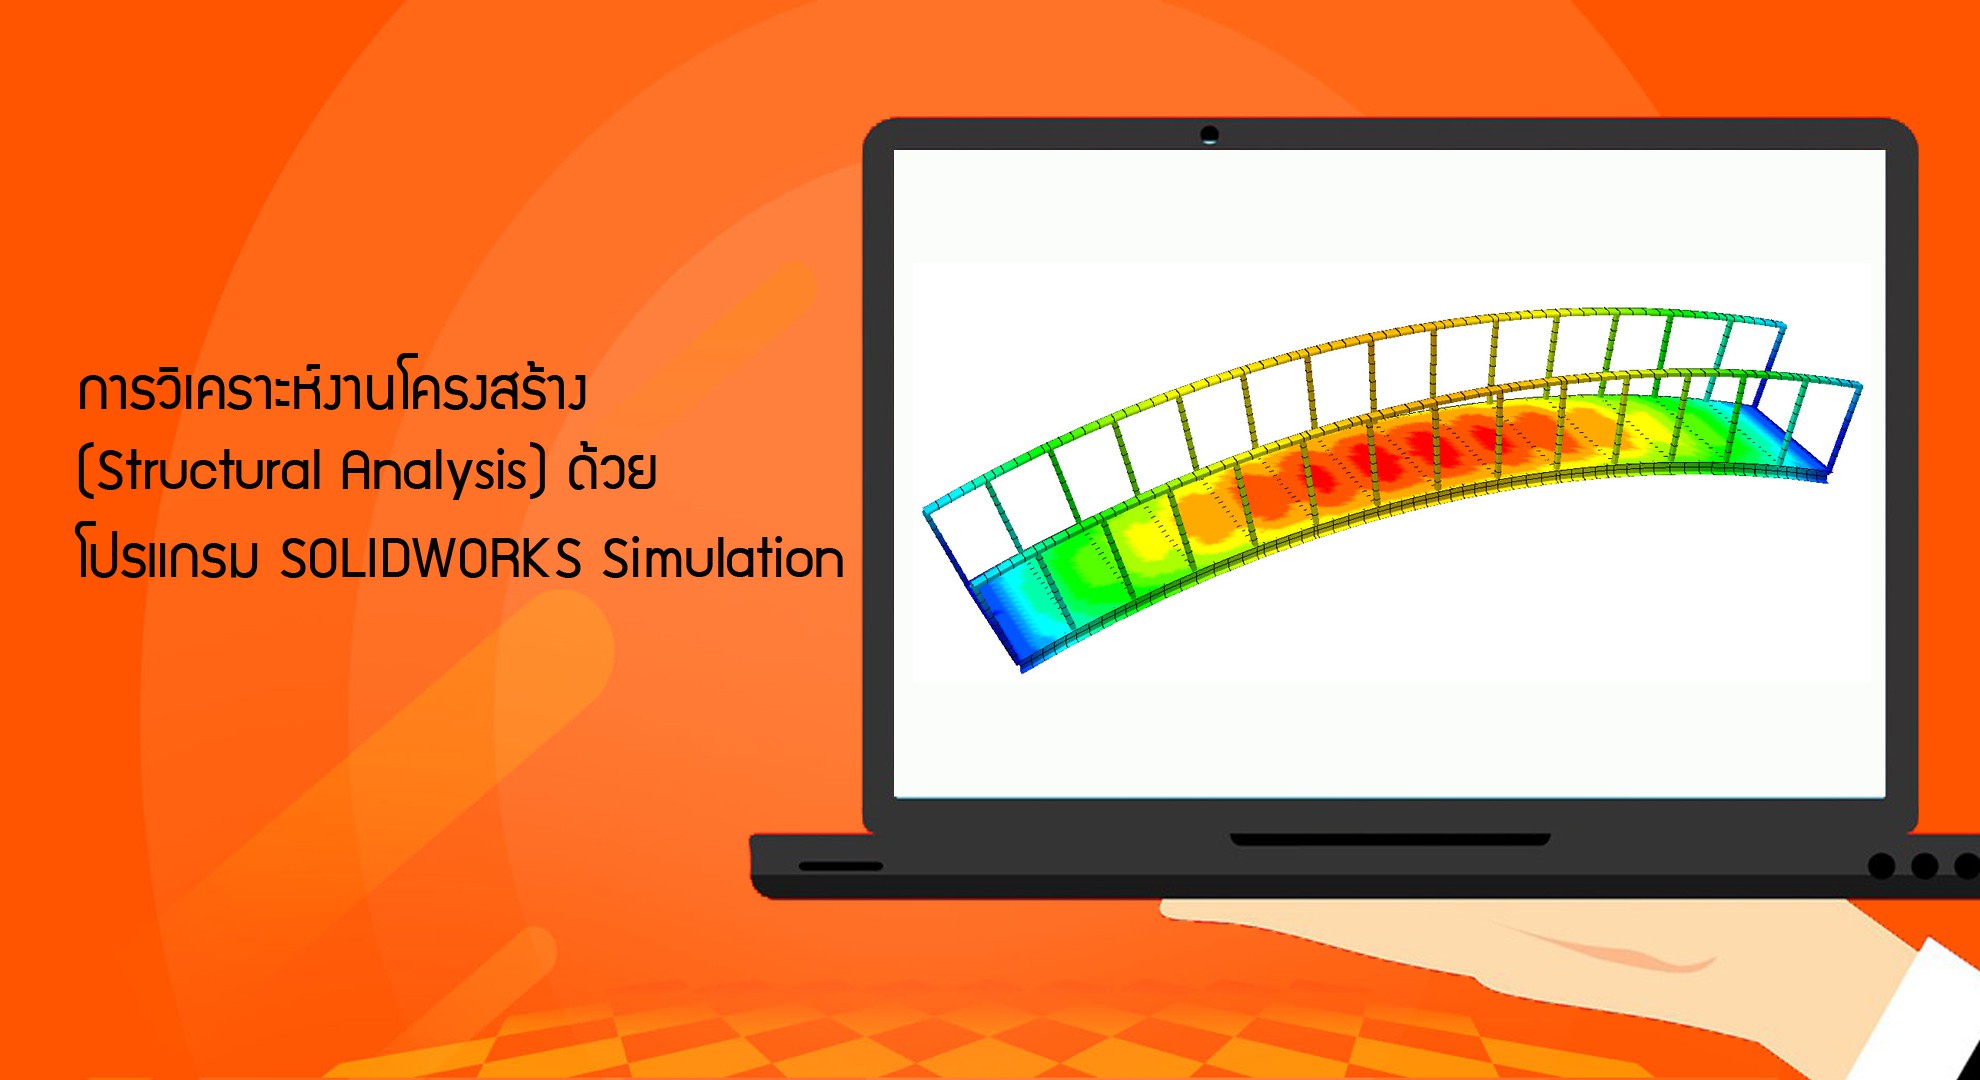 การวิเคราะห์งานโครงสร้าง (Structural Analysis) ด้วยโปรแกรม SOLIDWORKS Simulation